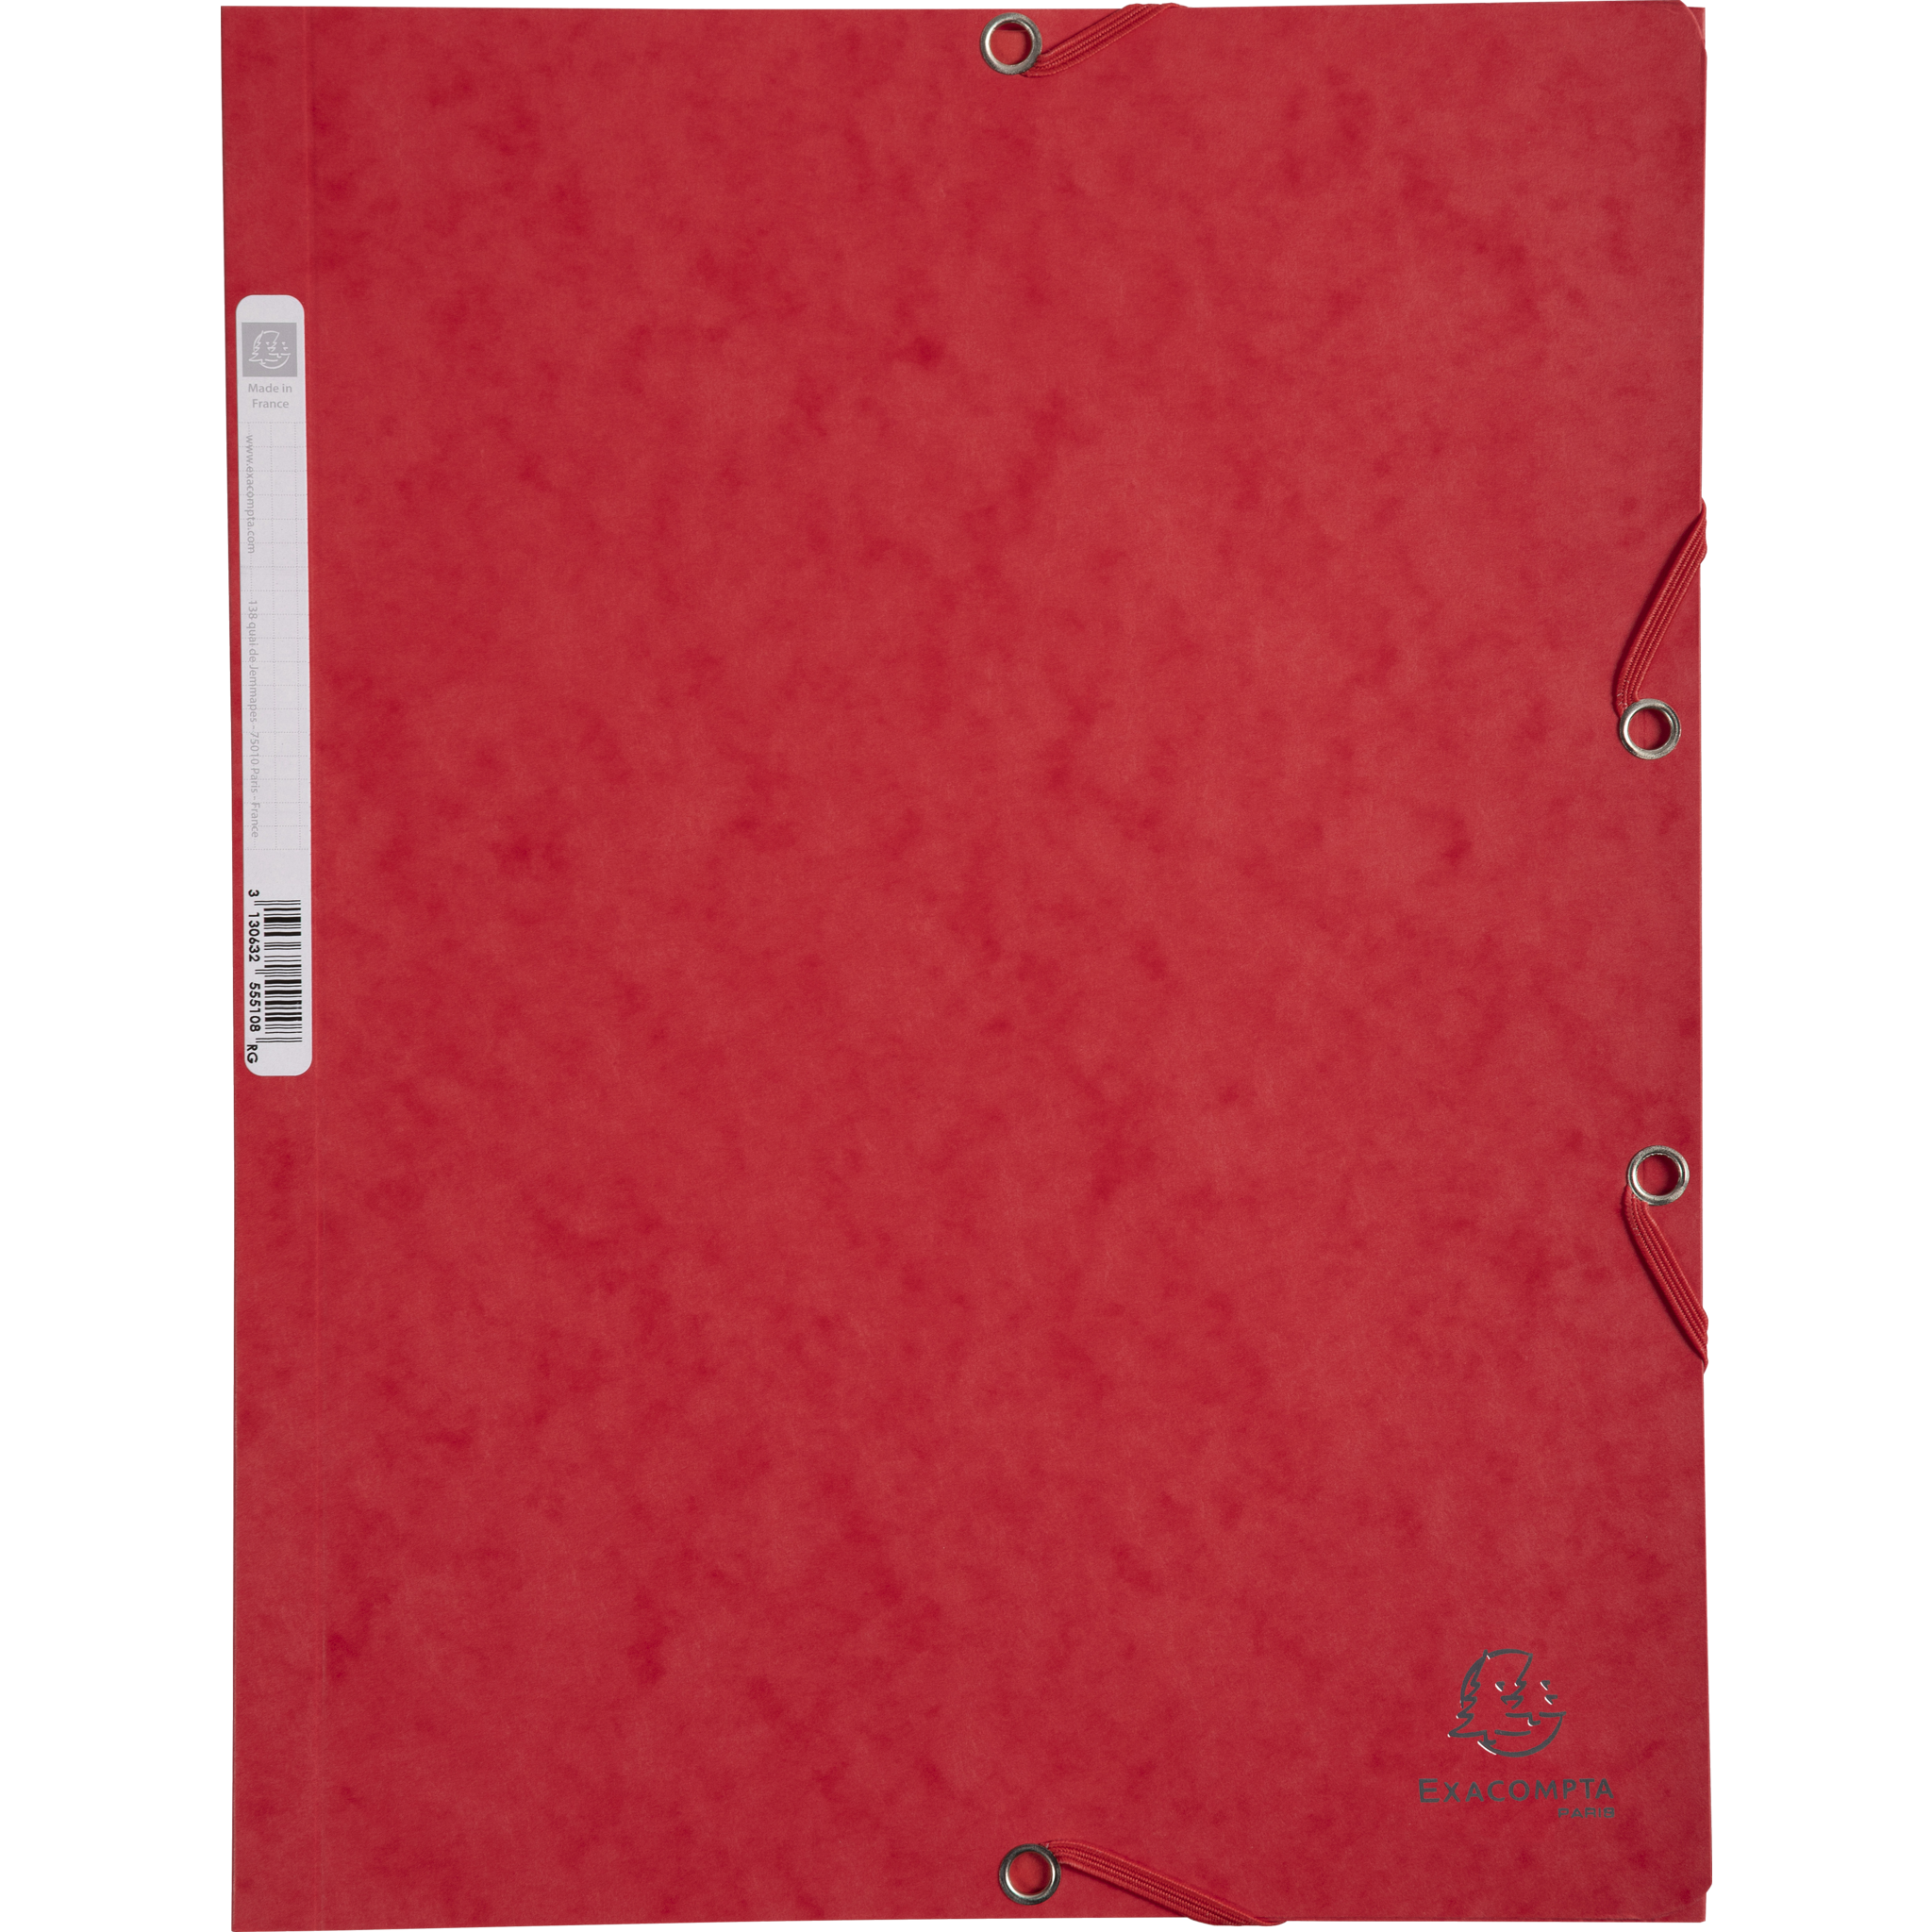 EXACOMPTA Sammelmappen mit Gummizug und 3 Klappen, Colorspan-Karton 400g/m2, für DIN A4 - Rot